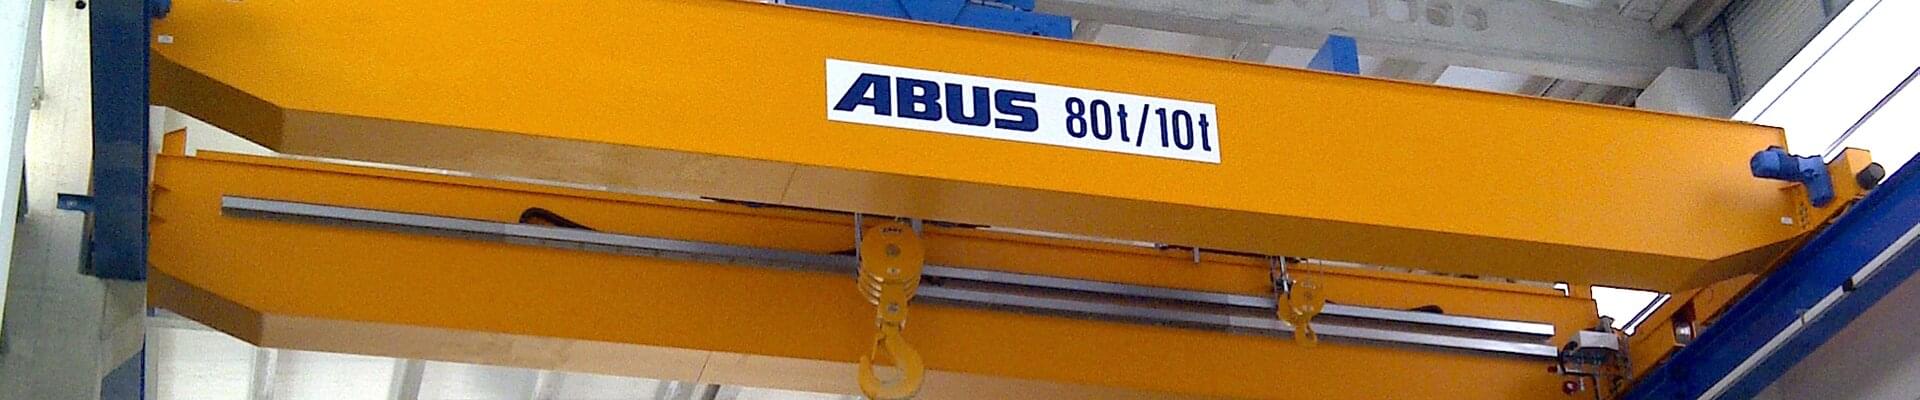 Carroponte ABUS con capacità di carico di 80t/10t in un'azienda di costruzioni navali nel nord-ovest della Spagna 